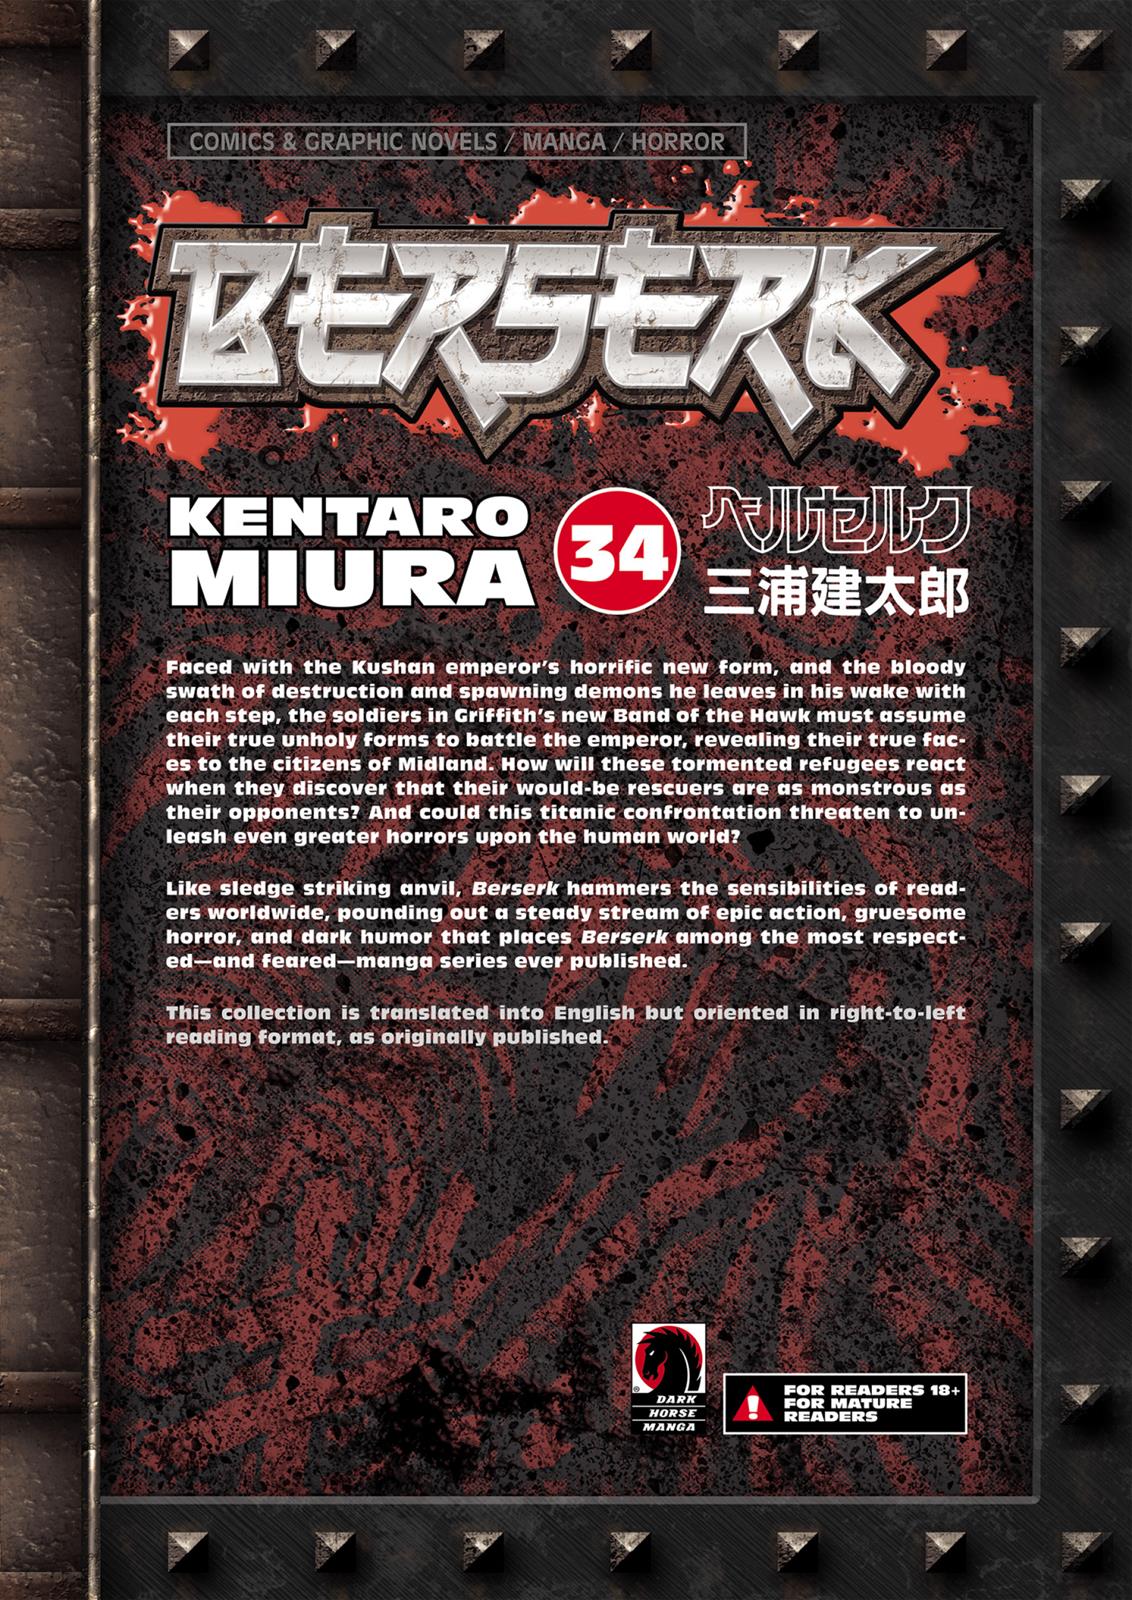 Berserk Manga Chapter 306 image 15